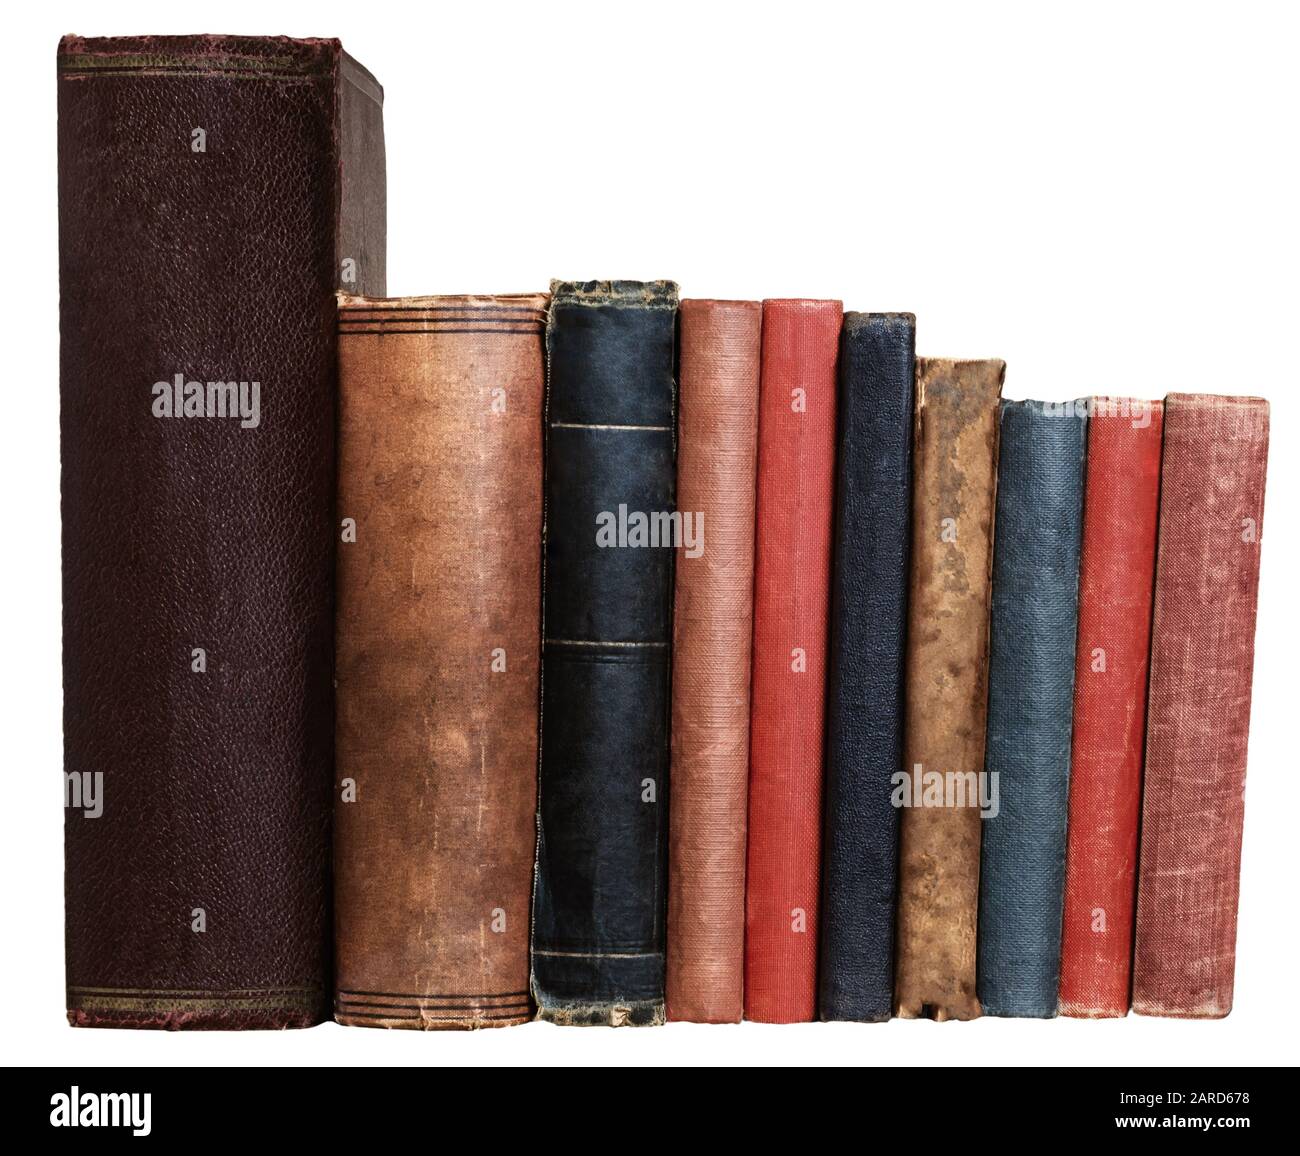 Una fila de libros antiguos en diferentes colores y tamaños, aislados sobre un fondo blanco. Espinas en blanco mirando al espectador a nivel de los ojos. Foto de stock